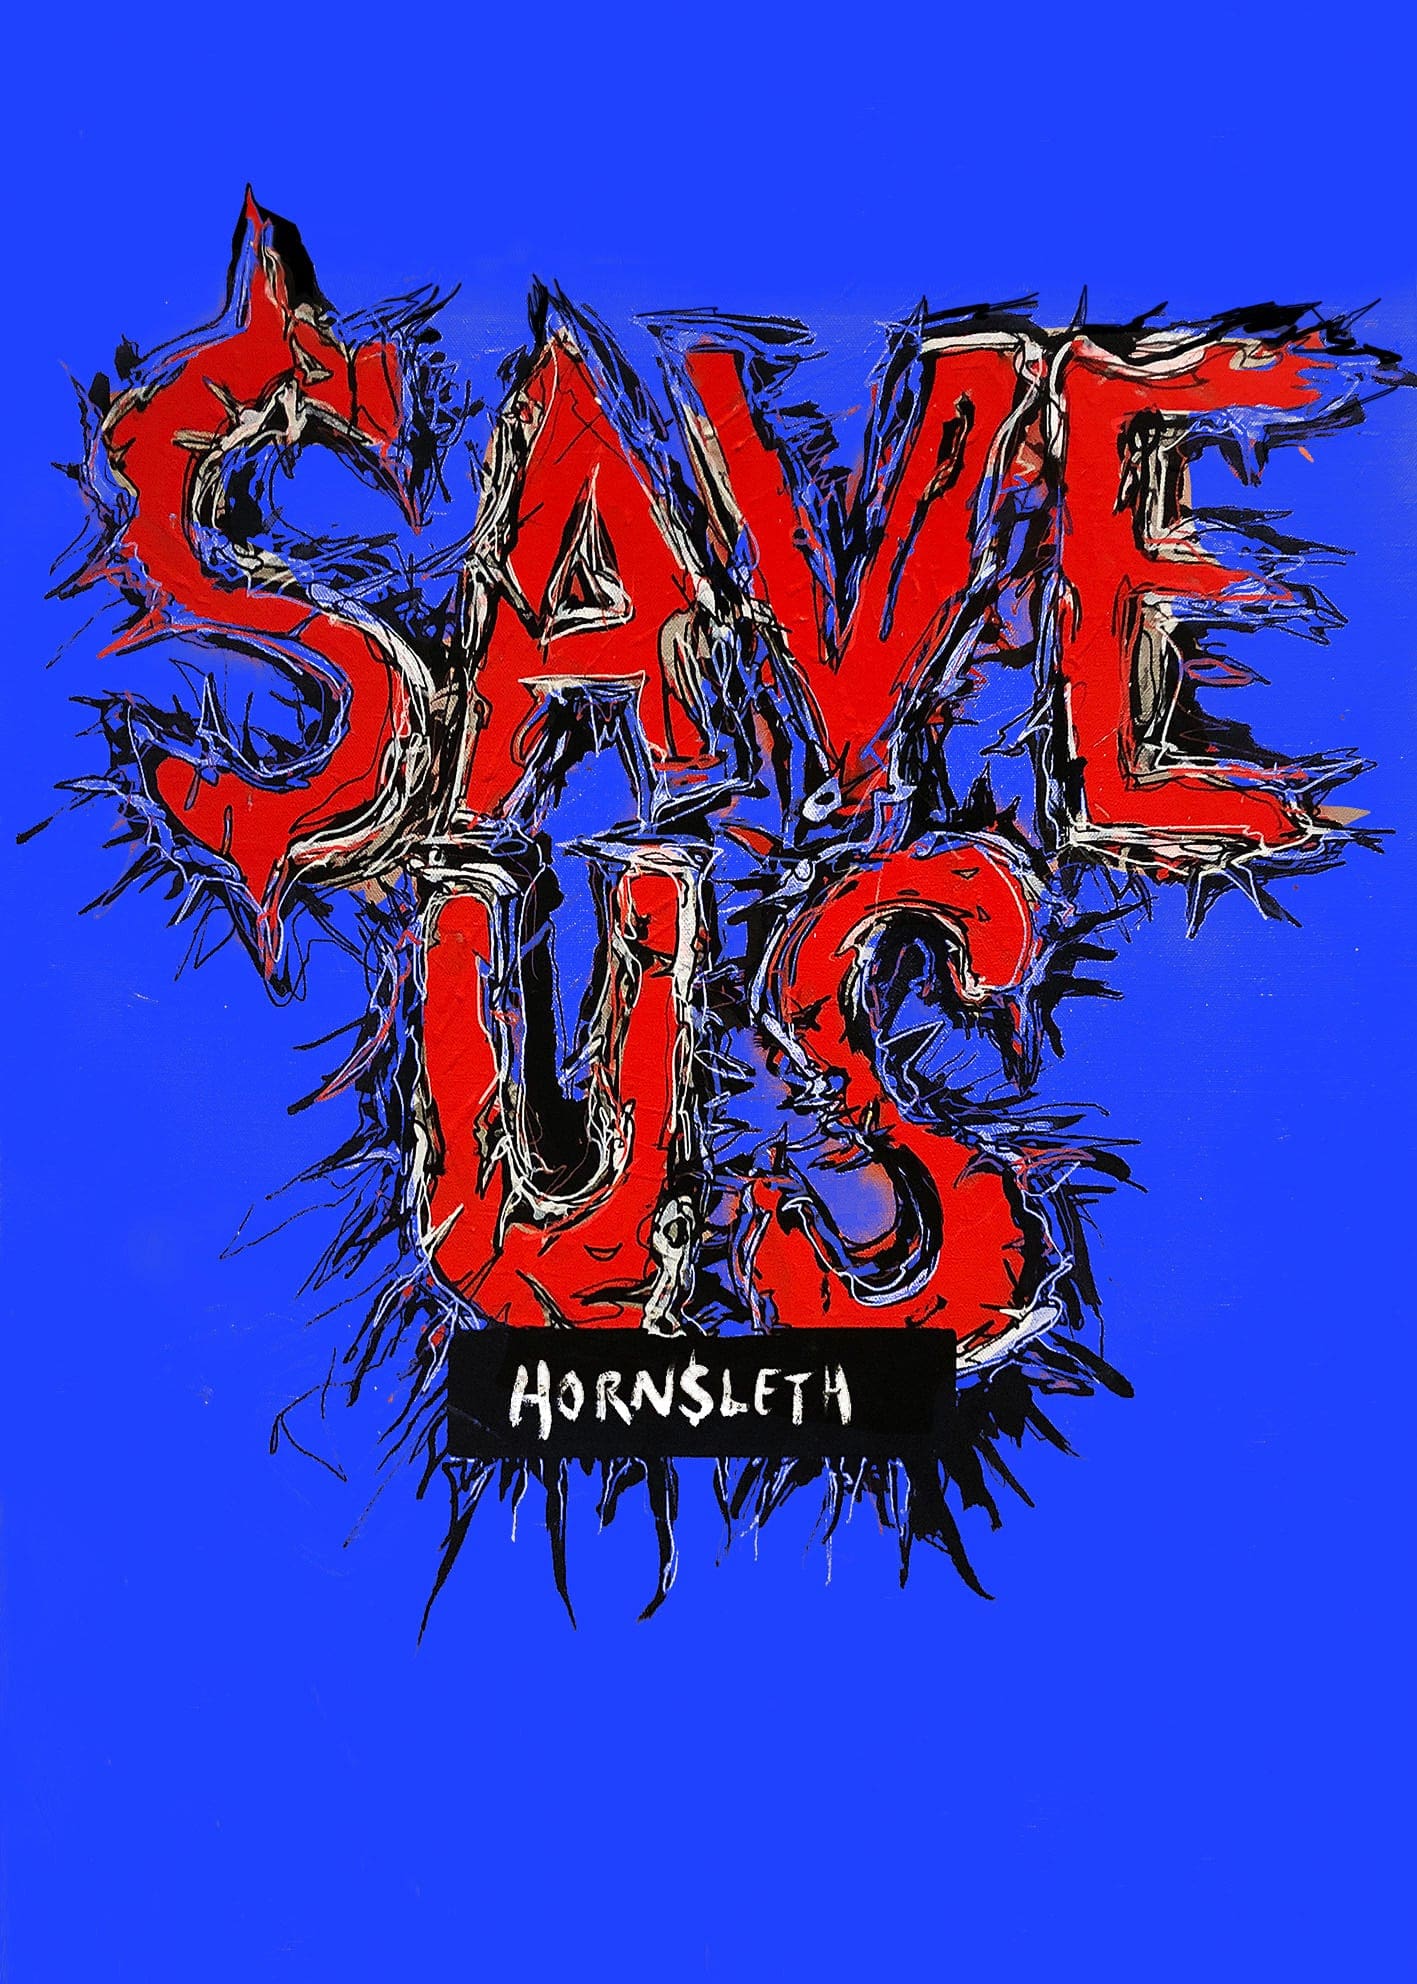 Save Us - Plakat af Hornsleth